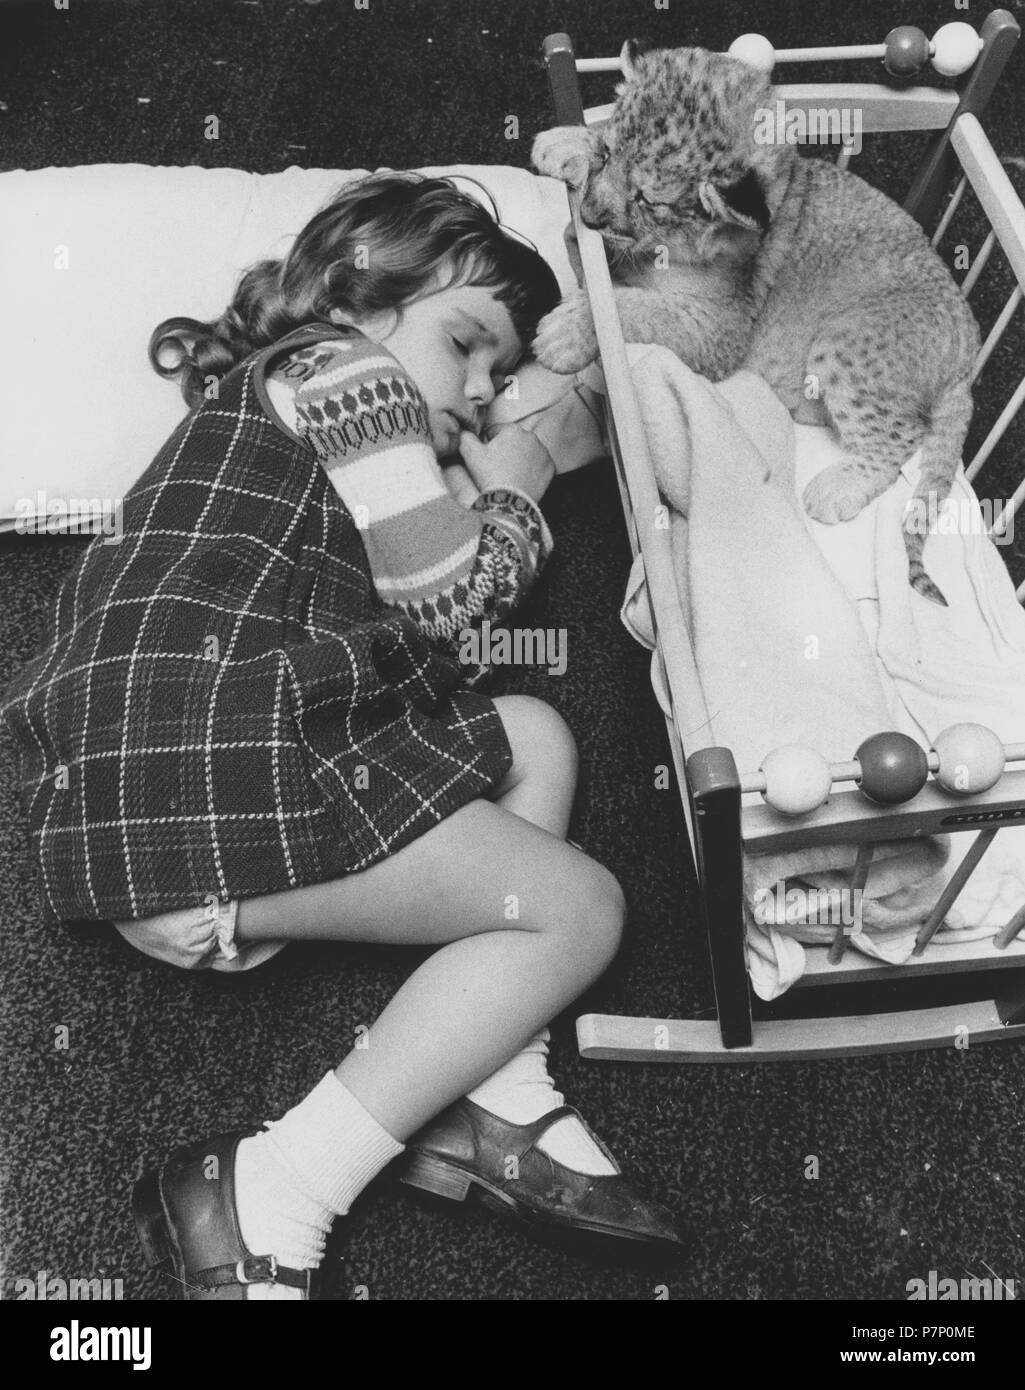 Dormir à côté d'une fille bébé prédateur, Angleterre, Grande-Bretagne Banque D'Images